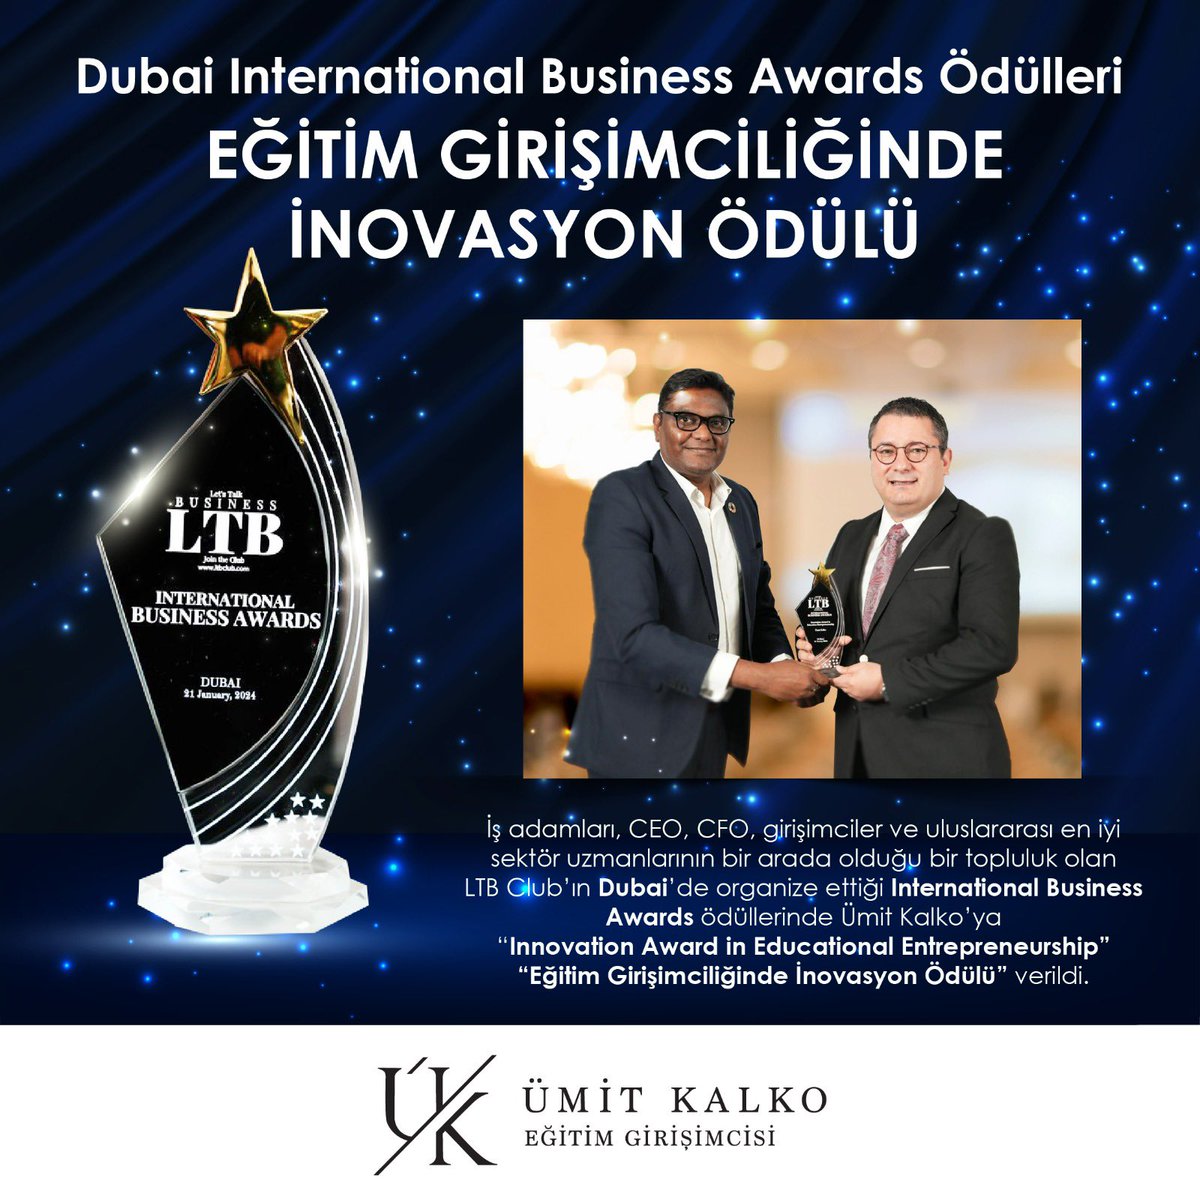 Dubai’ de uluslararası en iyi sektör uzmanlarının bir arada olduğu LTB Club’ ın organize ettiği *İnternational Business Awards* ödüllerinde şahsıma “*Innovation Award in Educational Entrepreneurship*” (Eğitim Girişimciliğinde İnovasyon Ödülü) verildi. LTB Club ailesine ve…